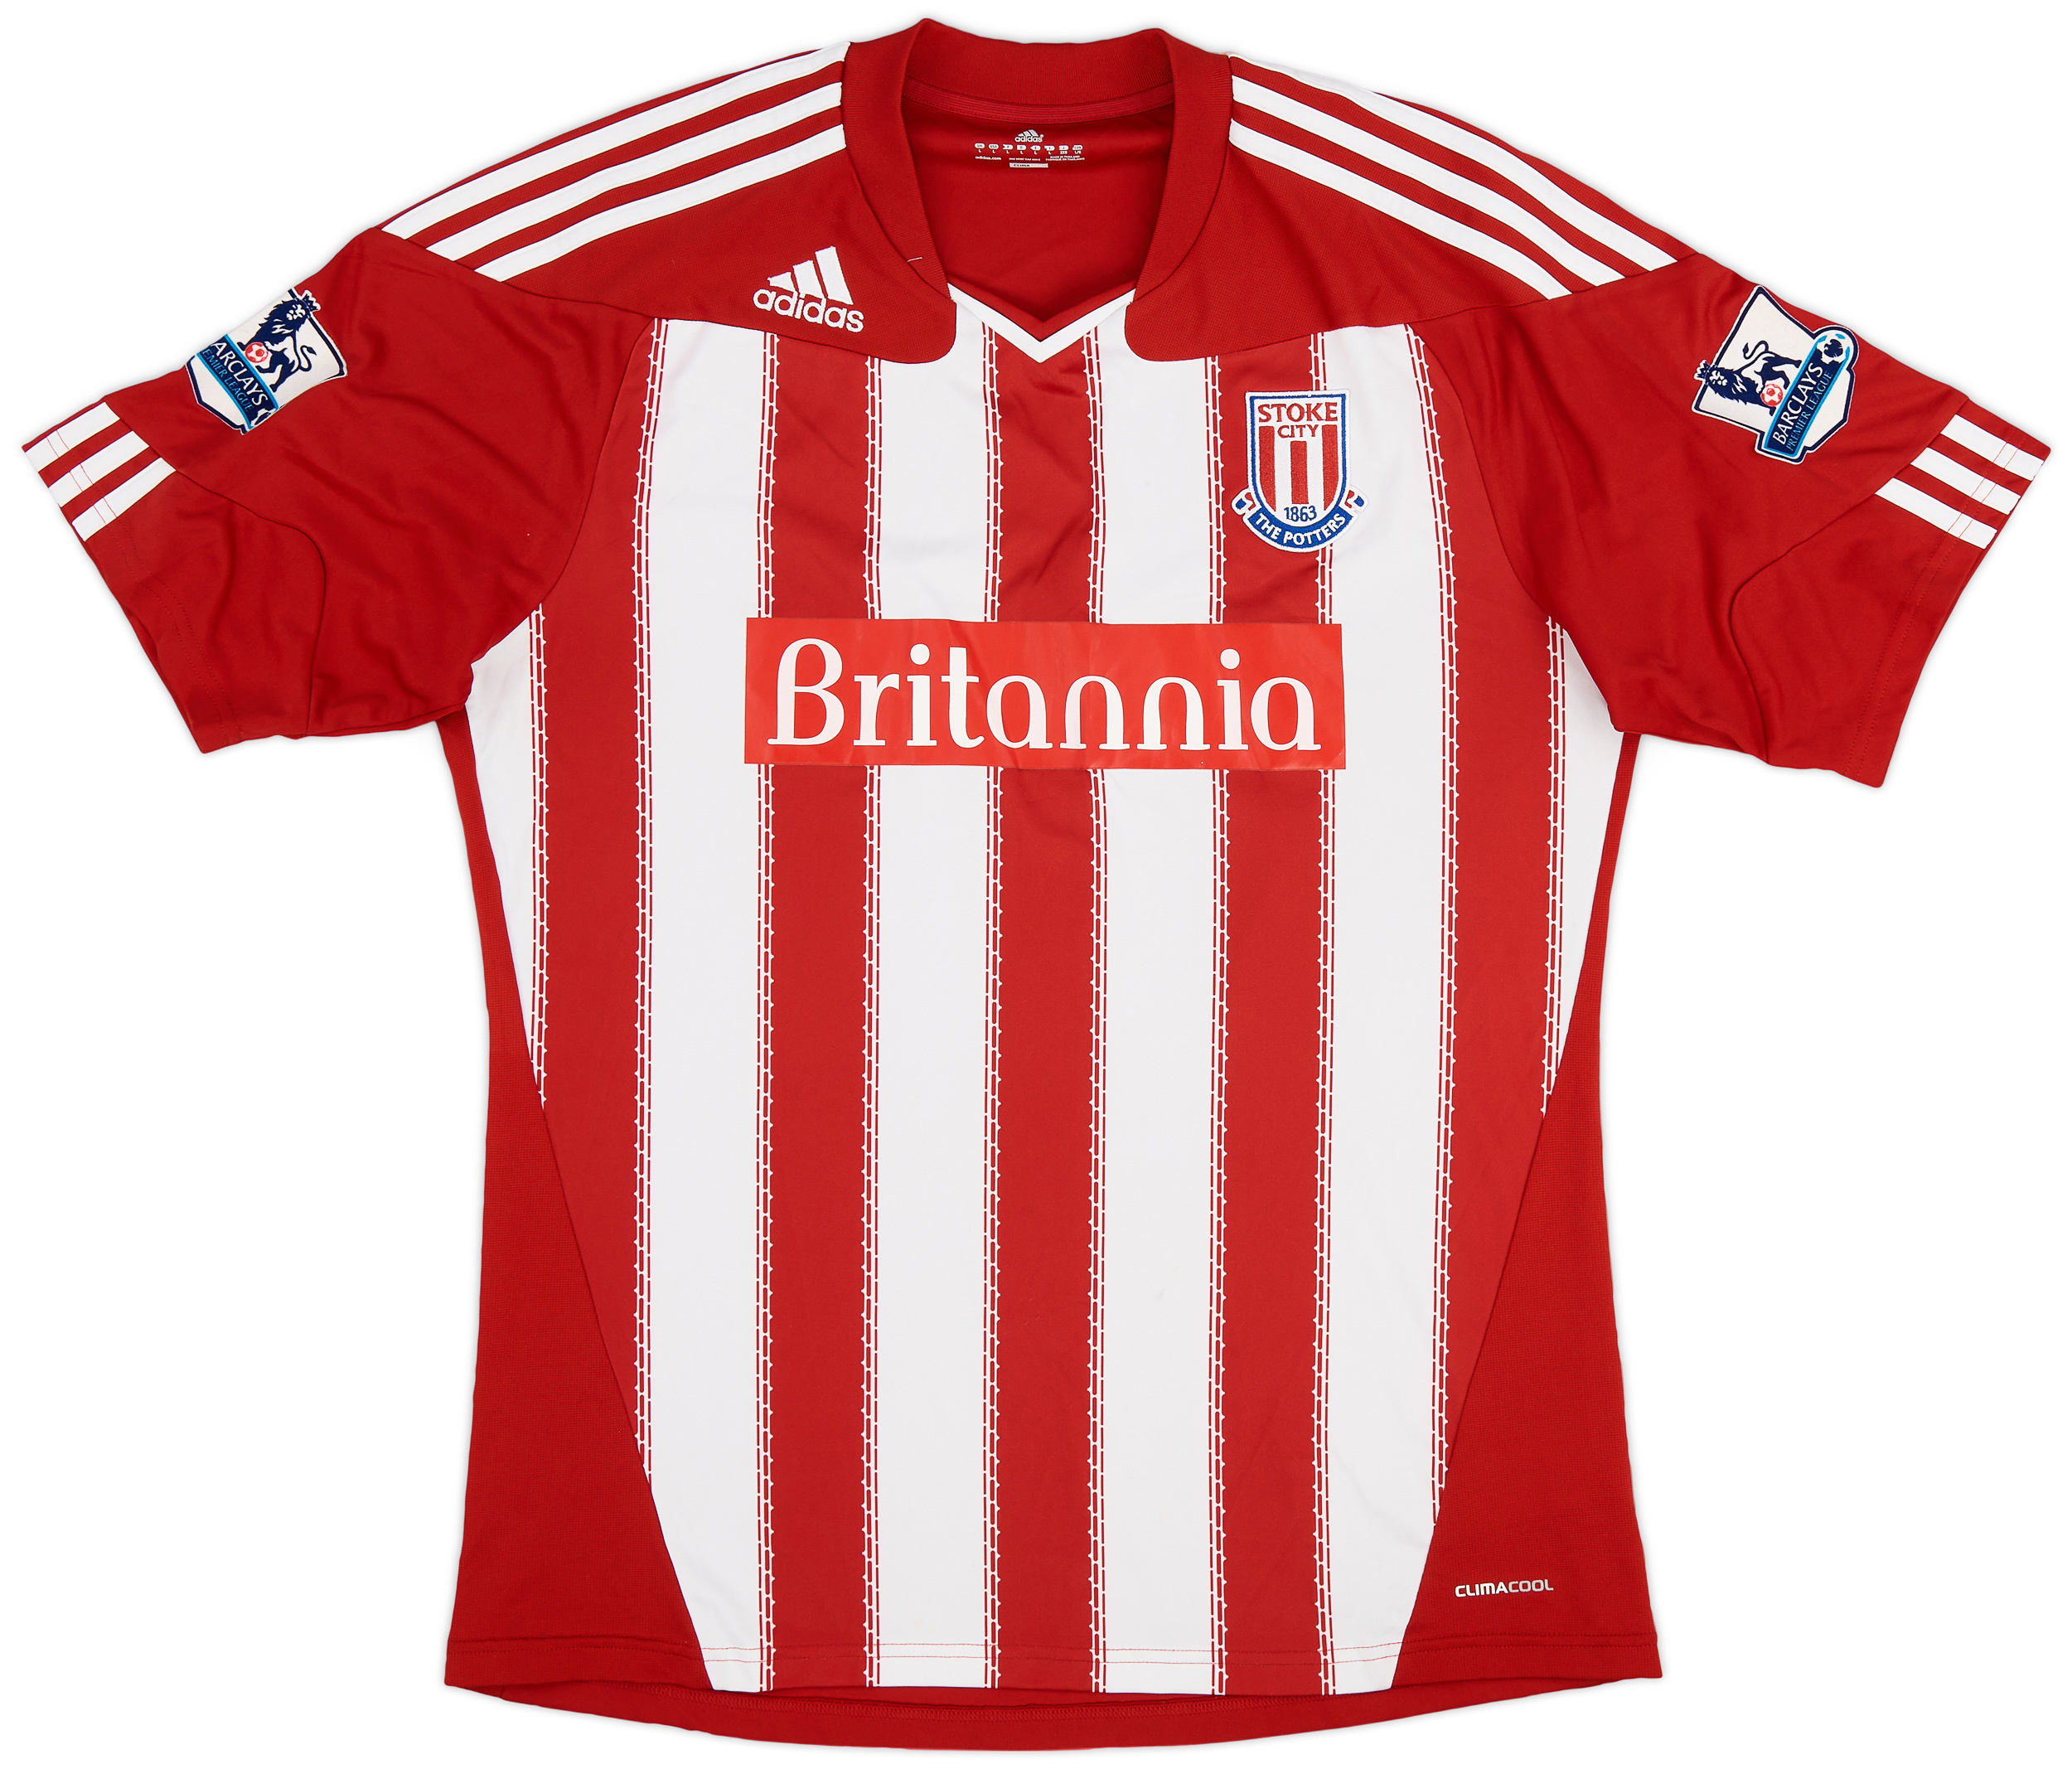 Stoke City  home shirt  (Original)